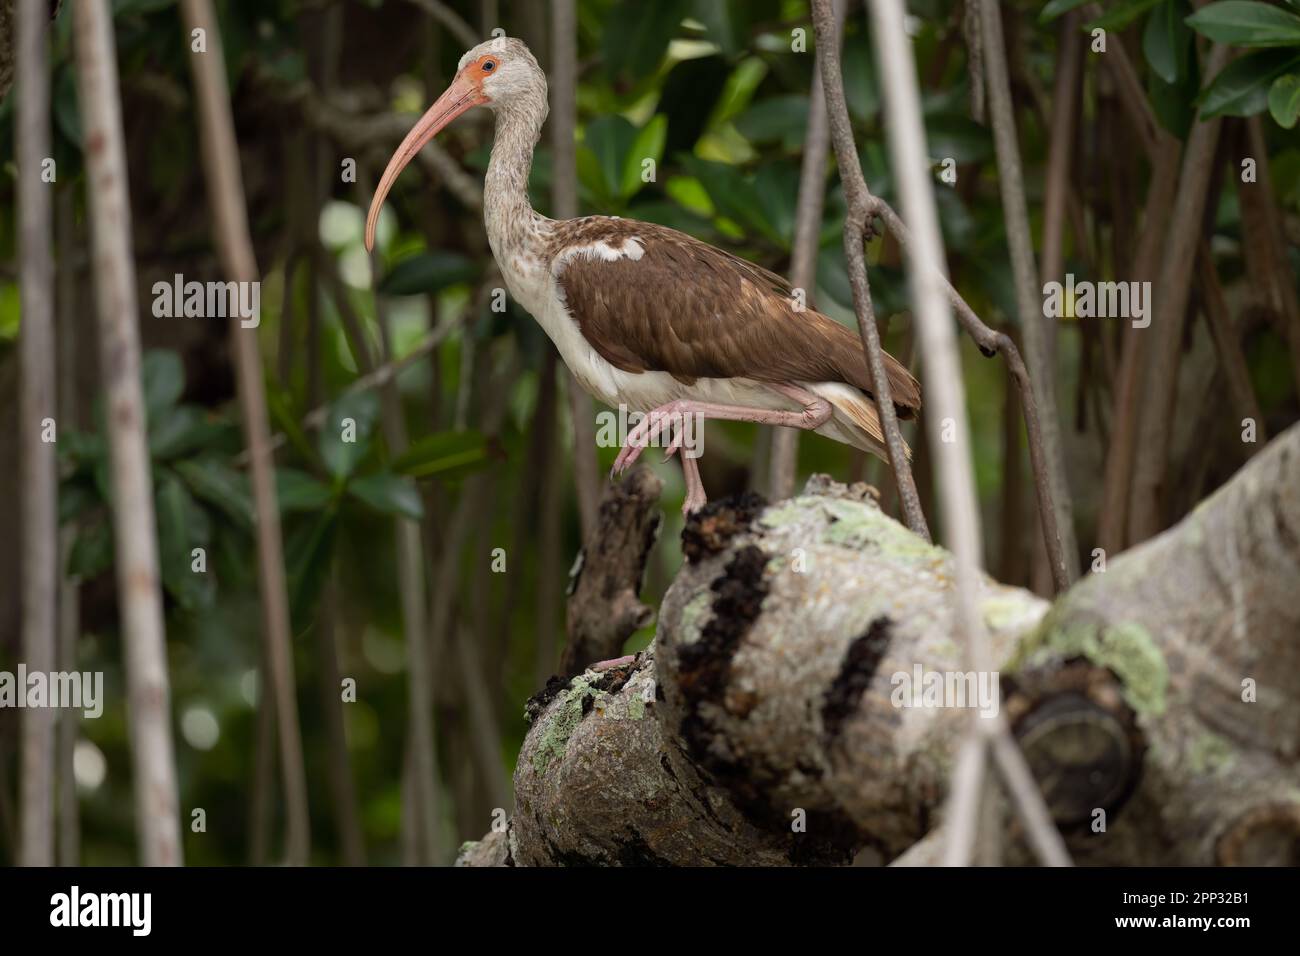 Juvenile white ibis on branch, Everglades Stock Photo